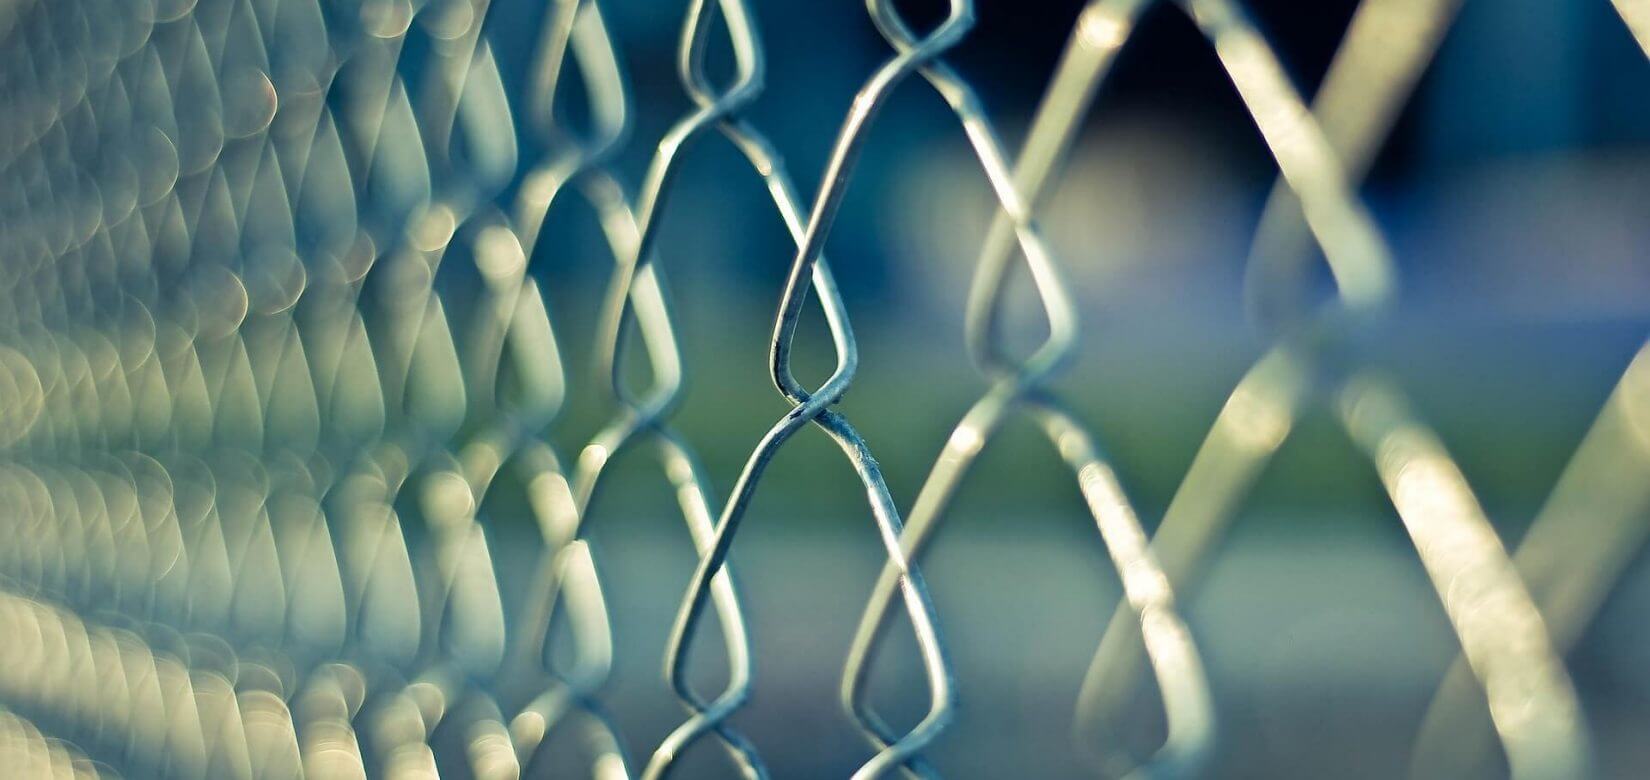 Στη φυλακή ο 48χρονος που αποπειράθηκε να απαγάγει 13χρονη στη Ραφήνα